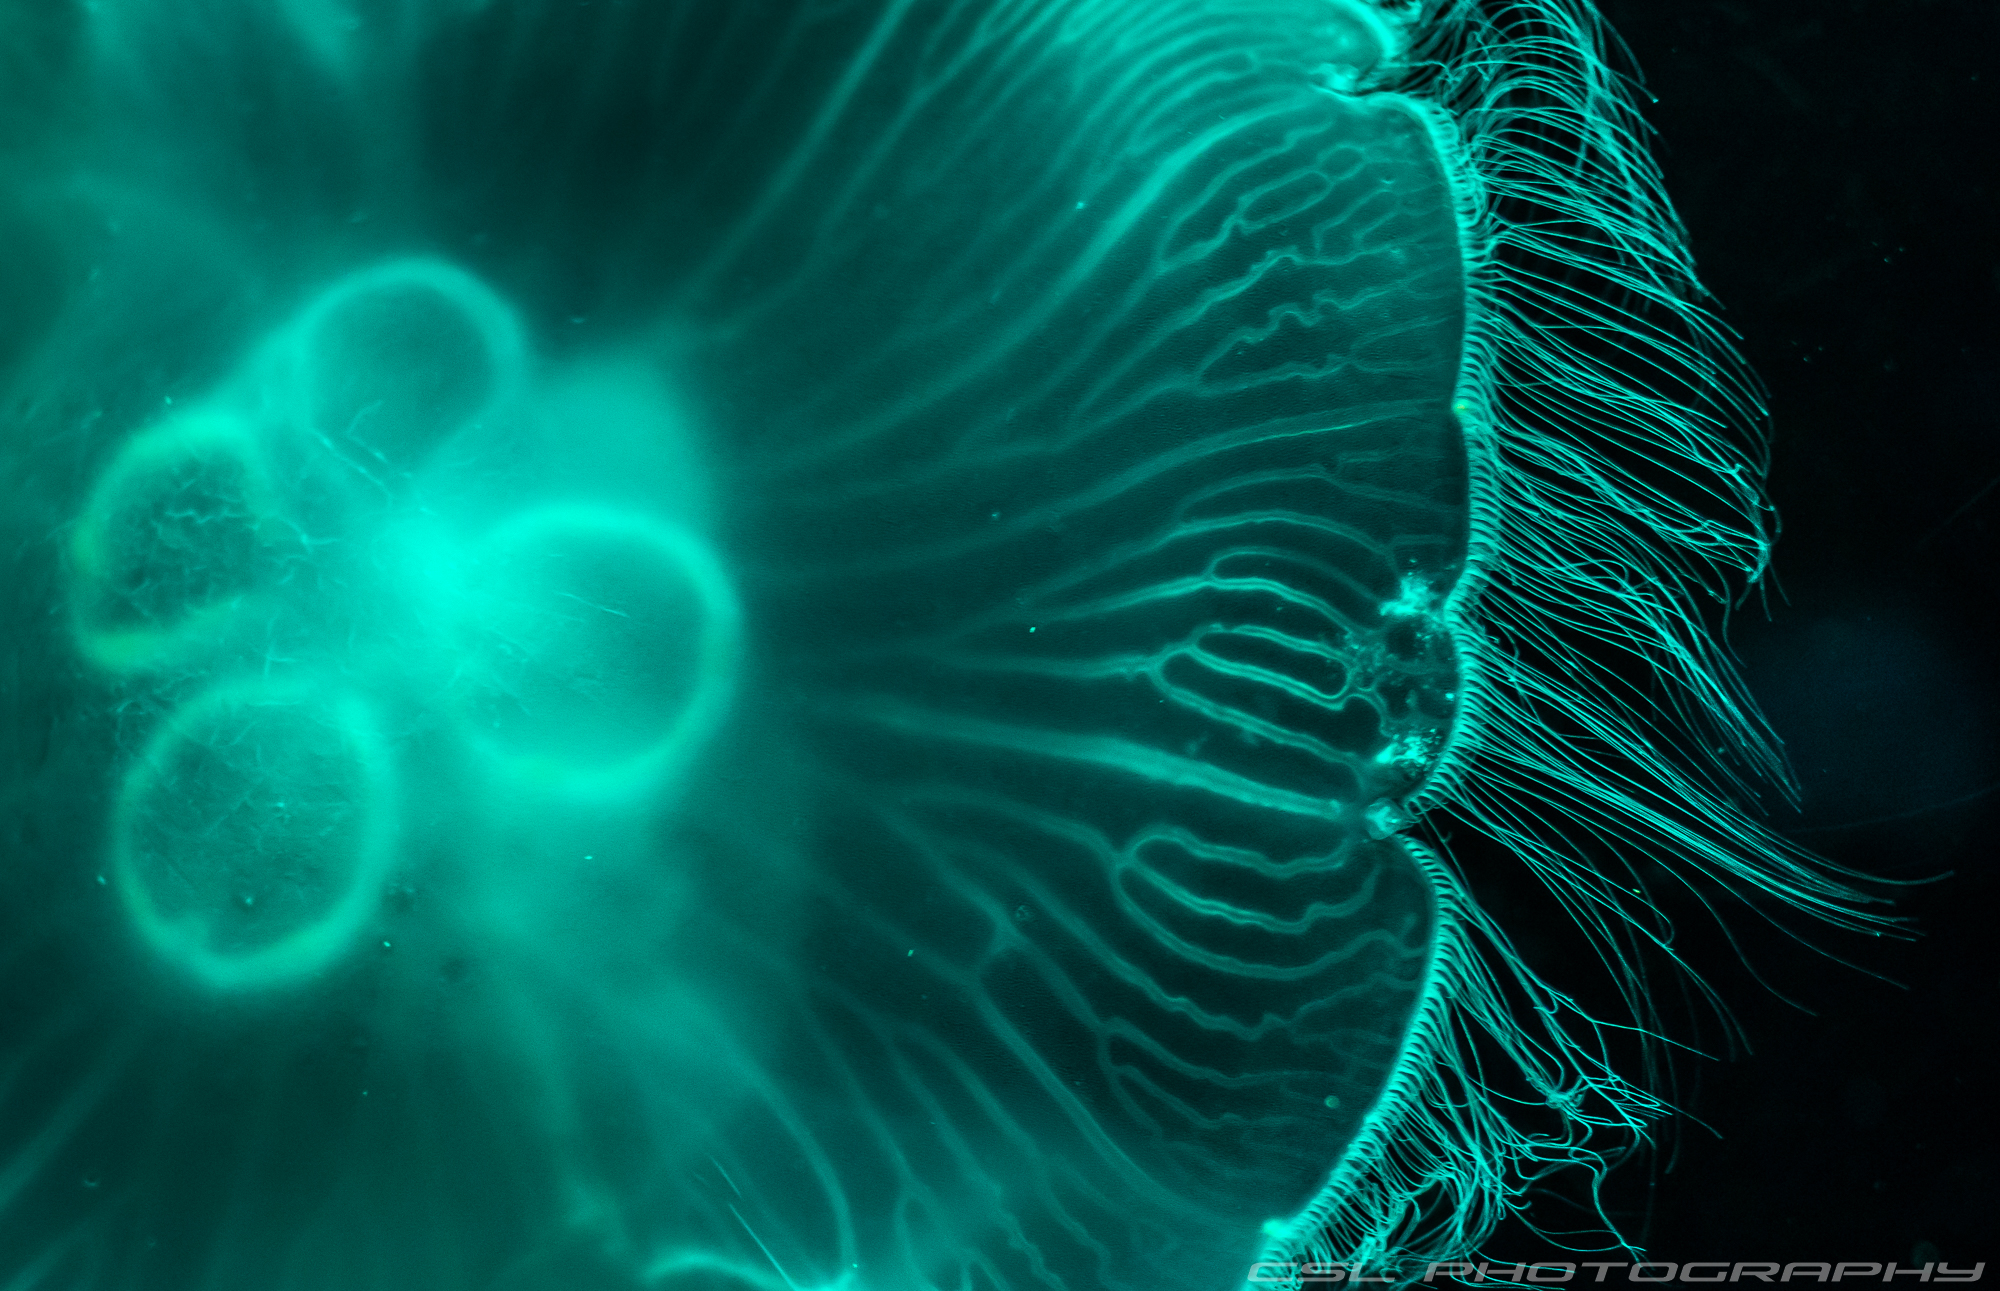 2000-3647-meduza.jpg